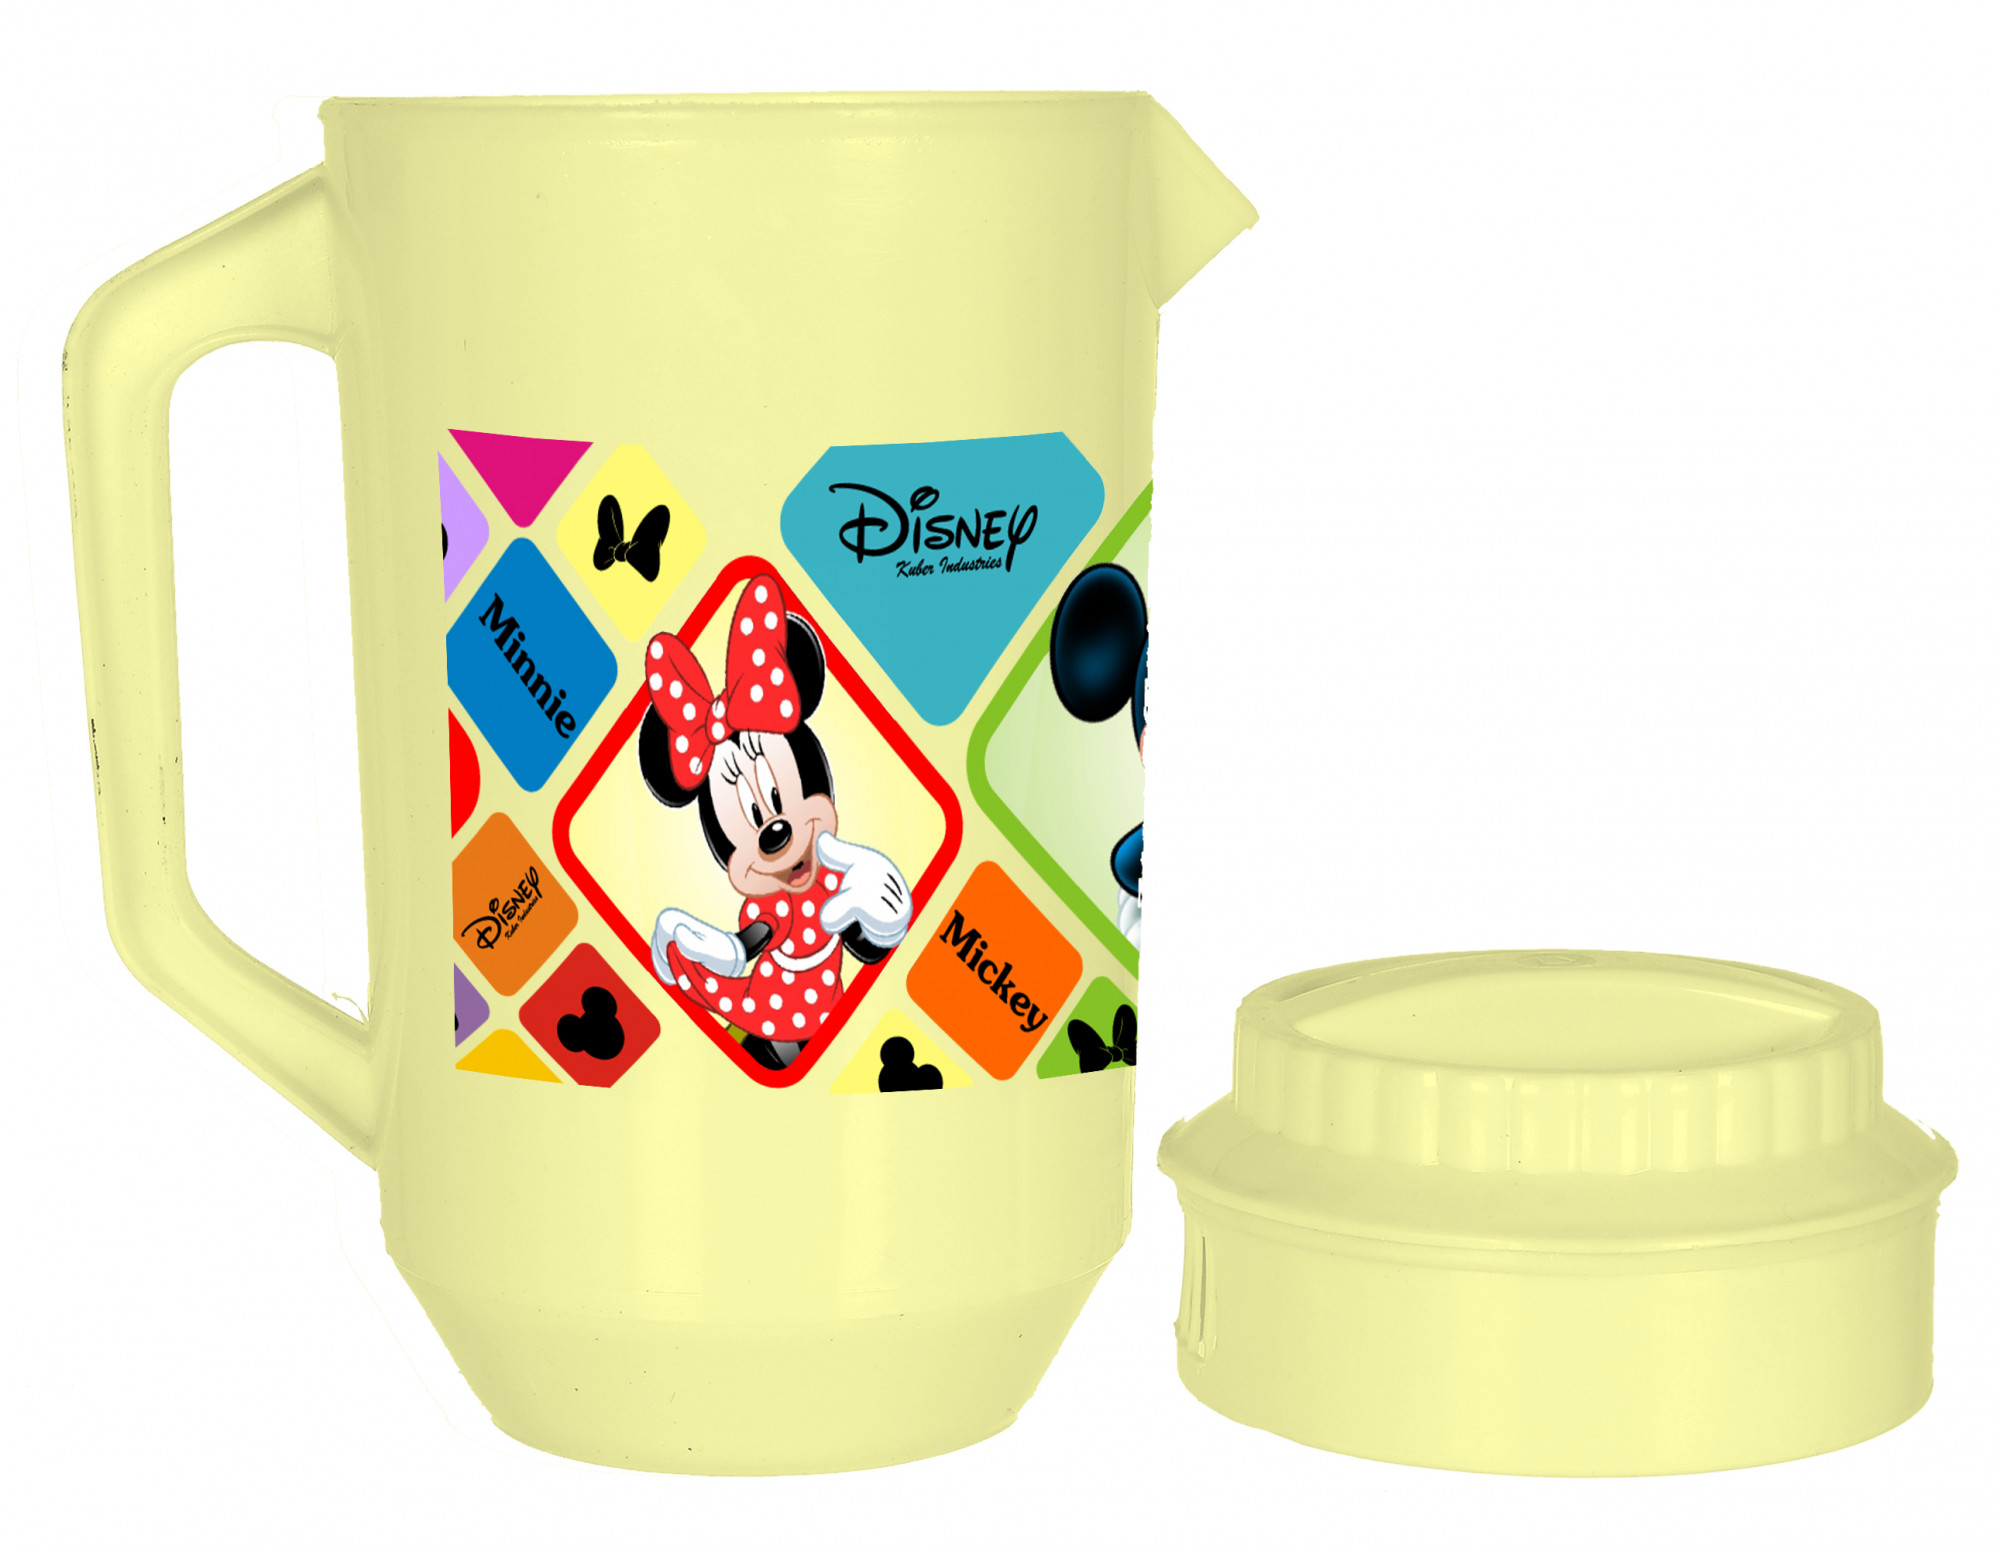 Kuber Industries Disney Mickey Minnie Print Unbreakable Multipurpose Plastic Water & Juice Jug With Lid,2 Ltr (Set of 3,Pink & Cream & Black)